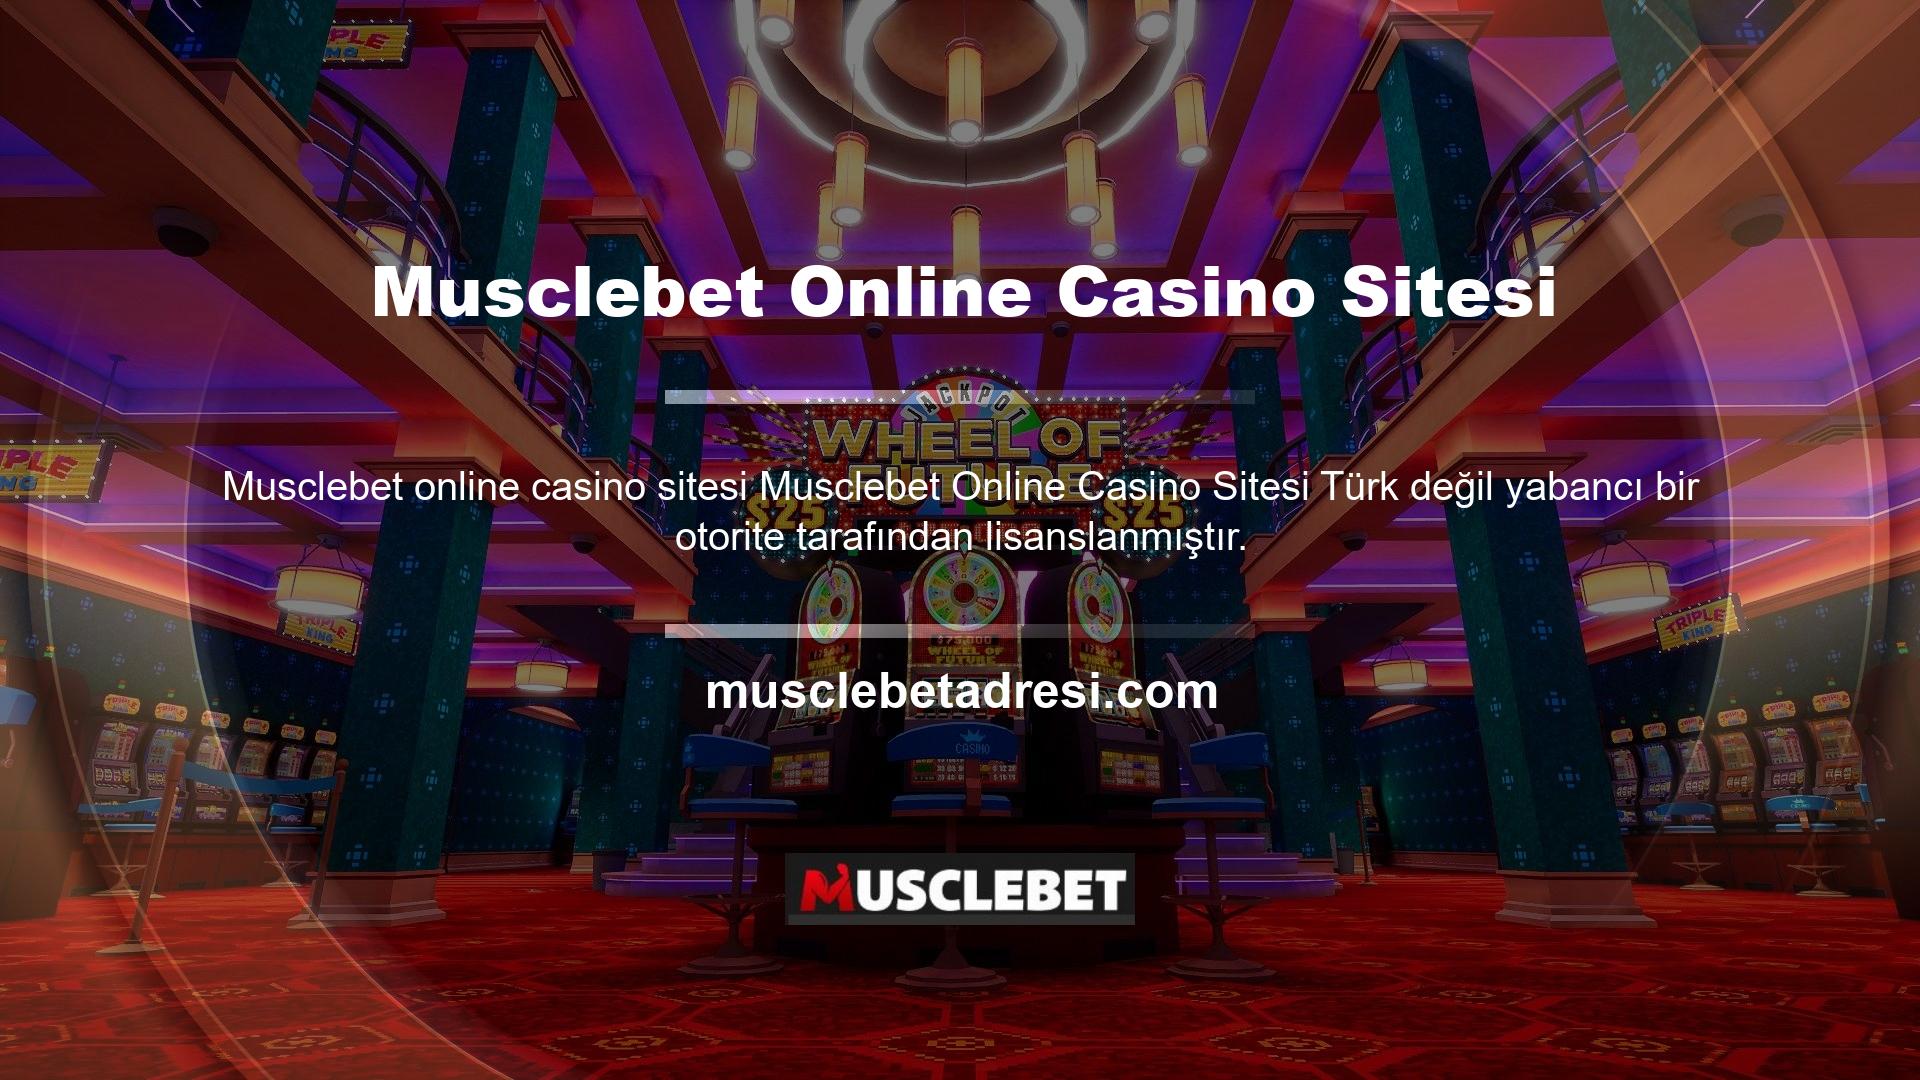 Yani bu Türkiye'deki yasa dışı çevrimiçi casino platformlarından biridir